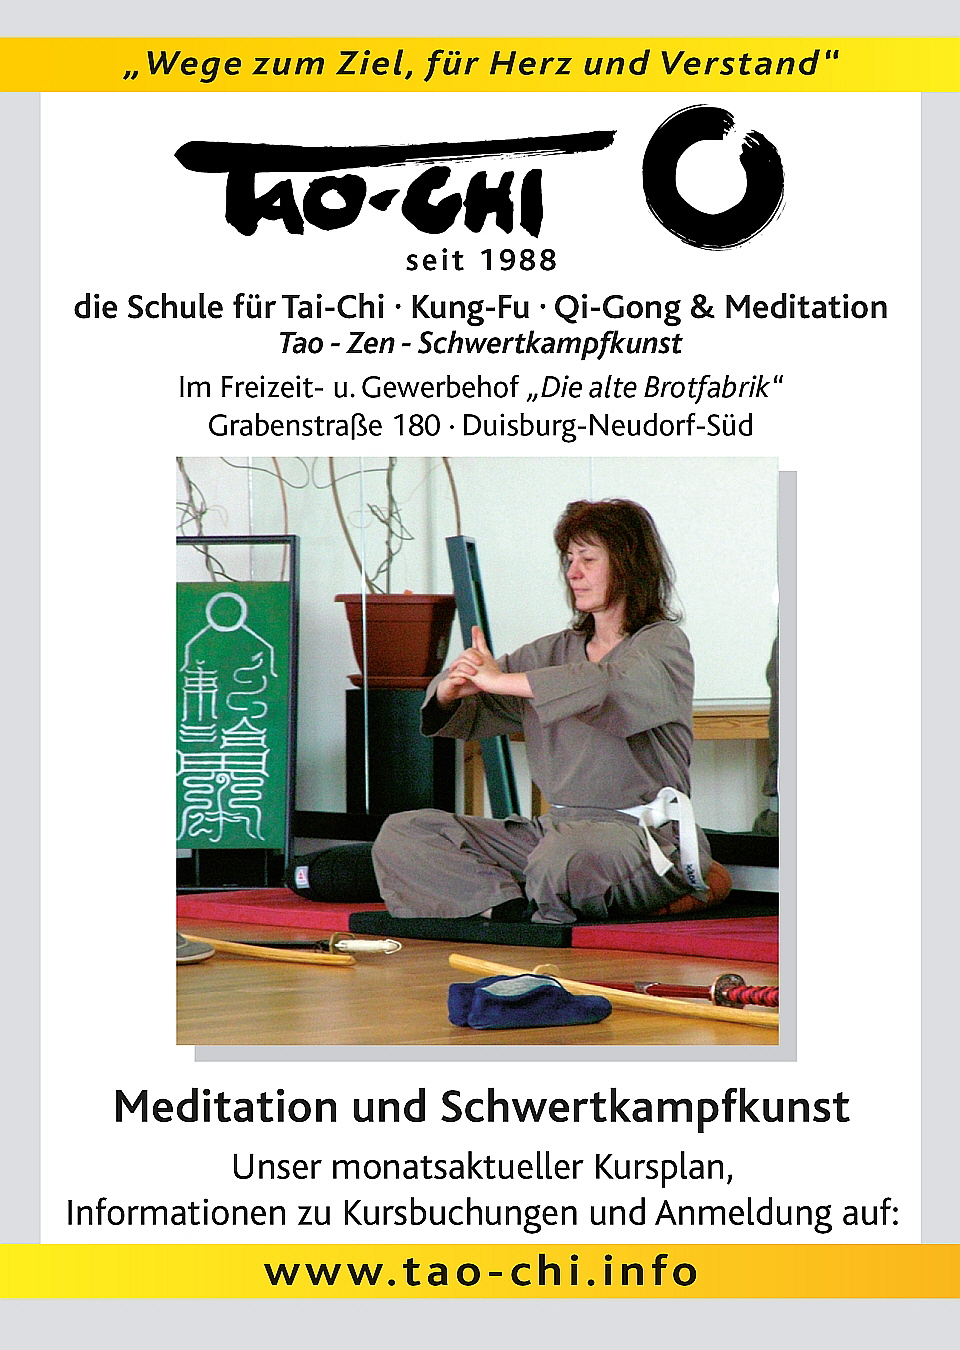 Meditation und Schwertkampfkunst im Dojo des Tao-Chi Duisburg